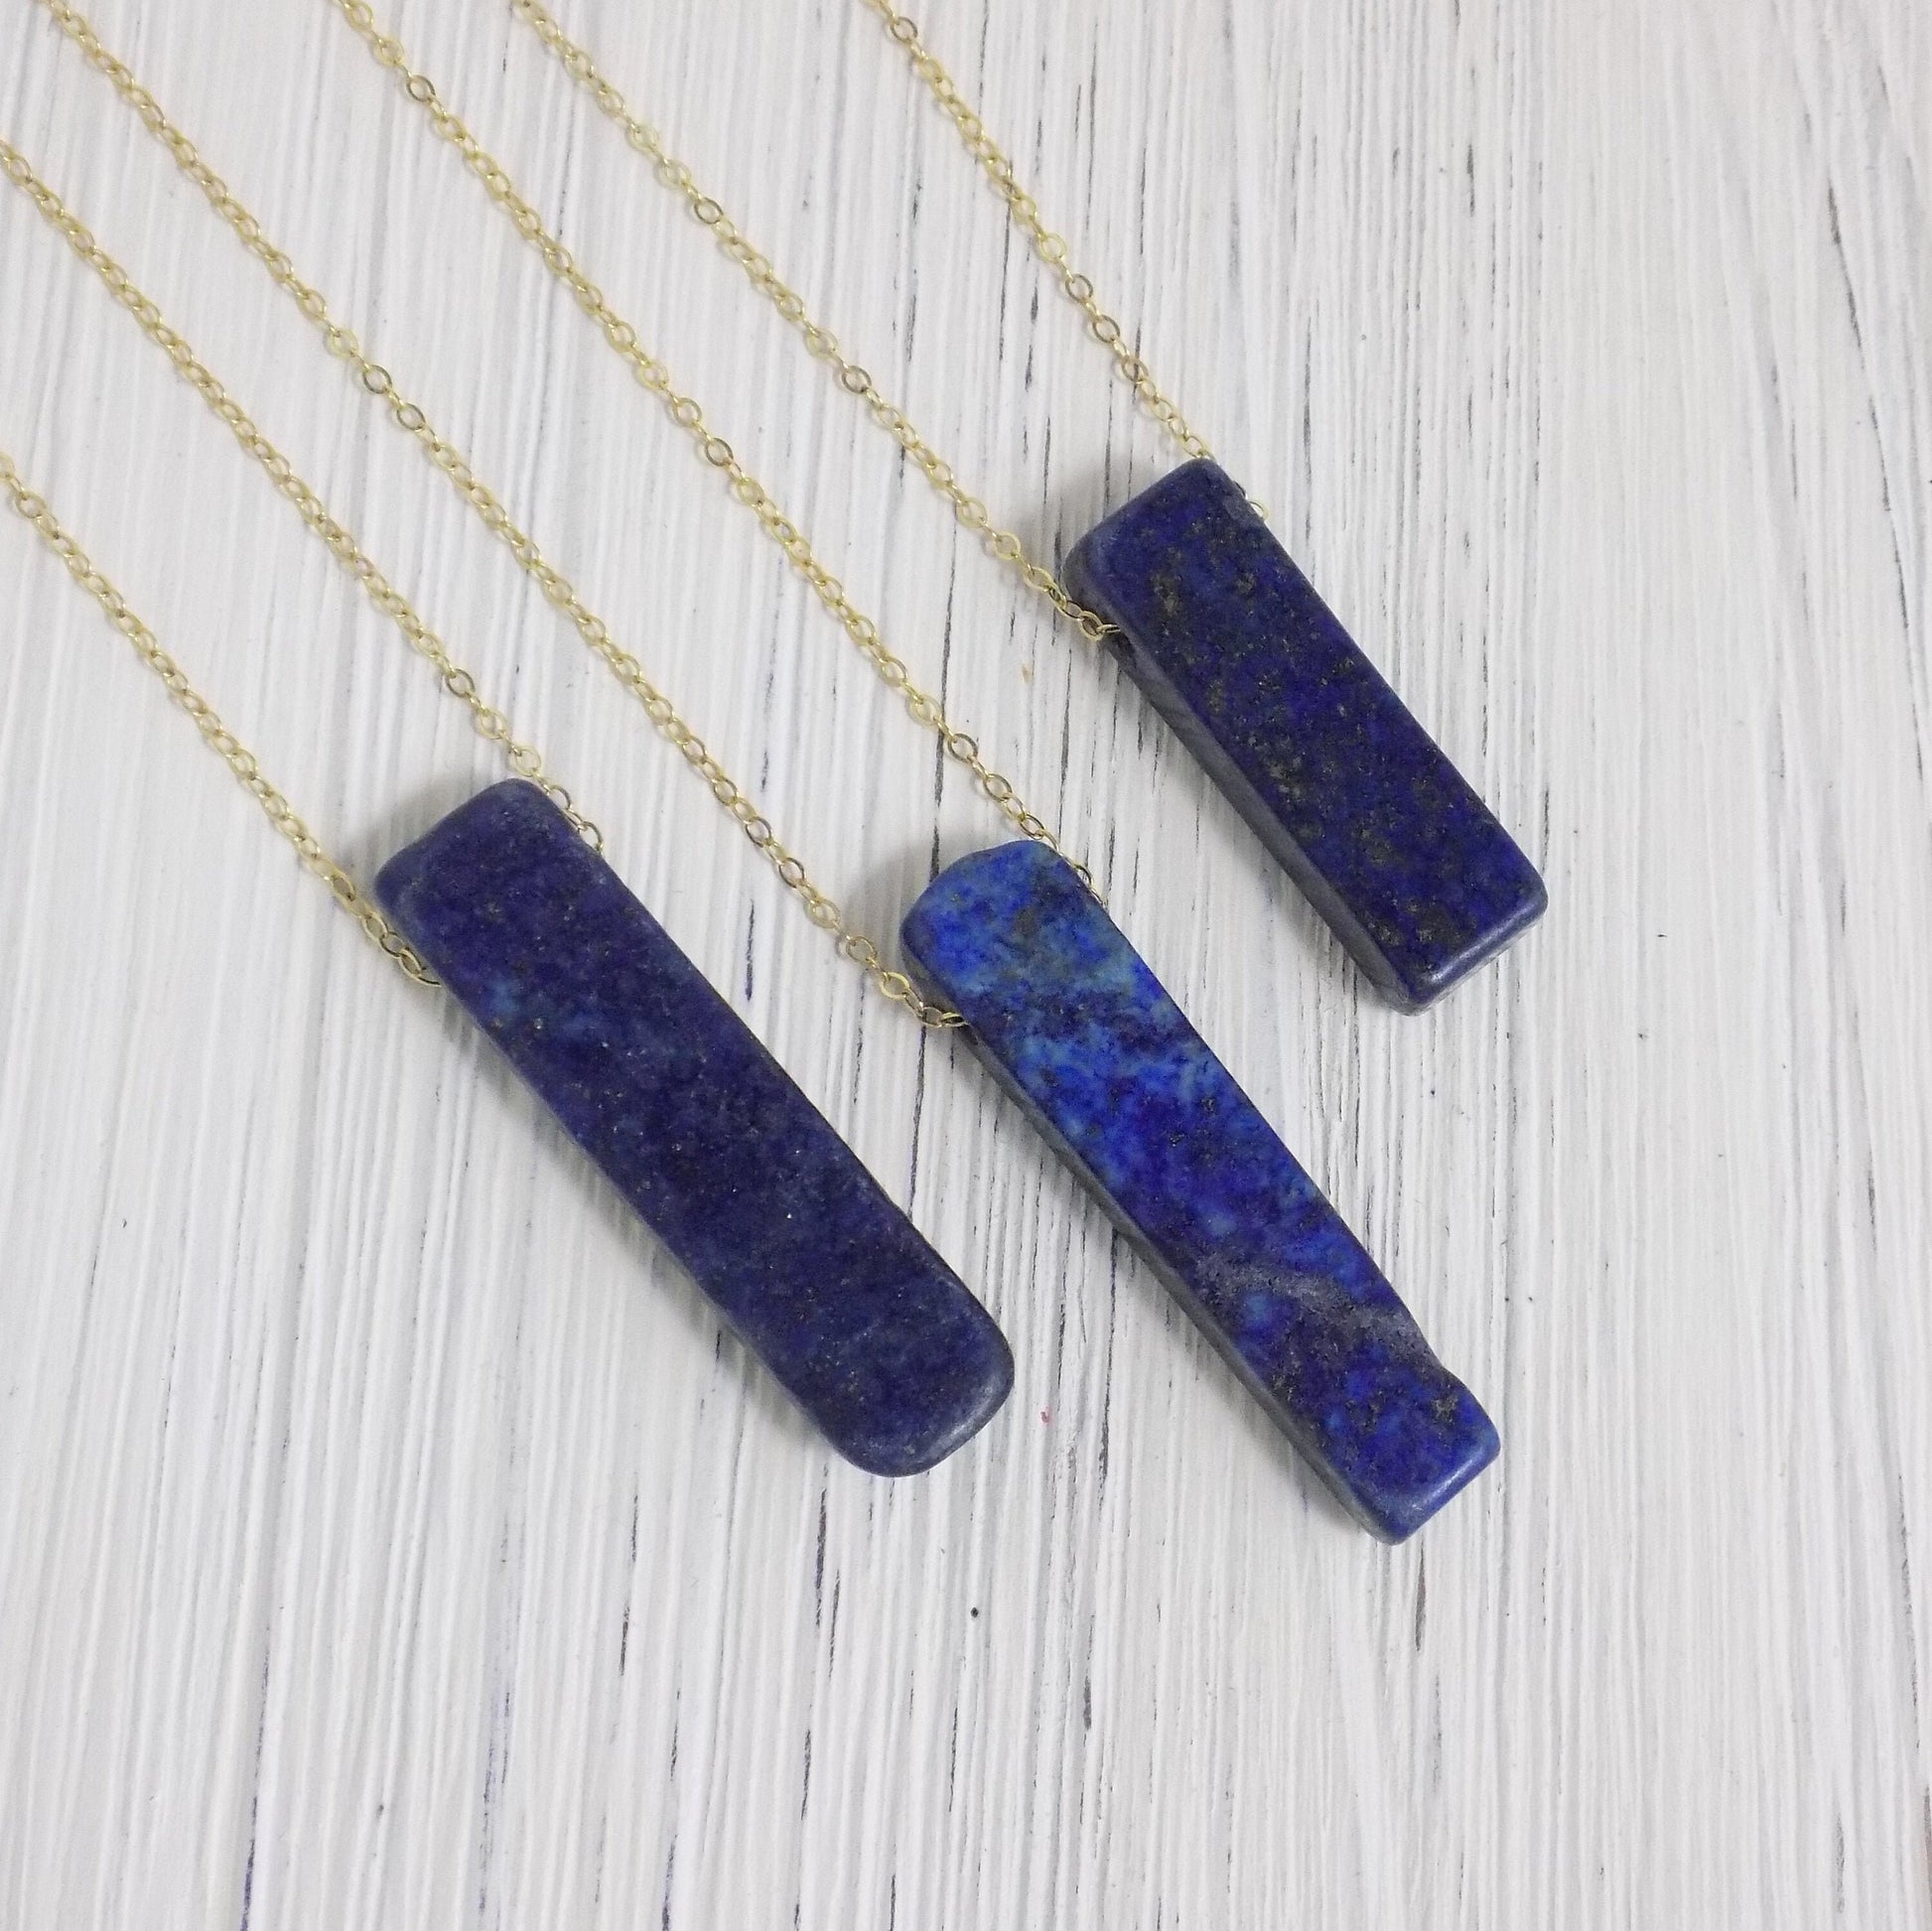 Lapis Necklace - Lapis Lazuli Necklace